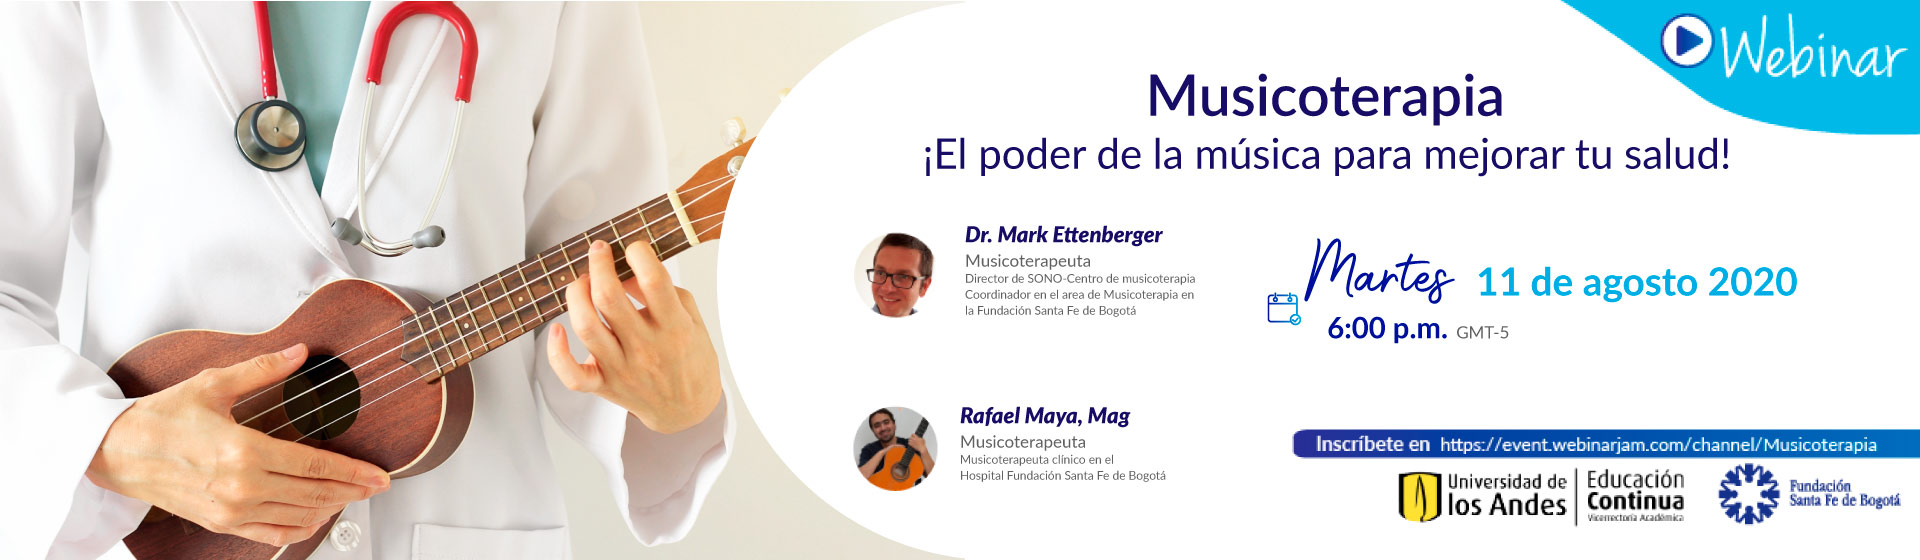 Musicoterapia: ¡El poder de la música para mejorar tu salud!